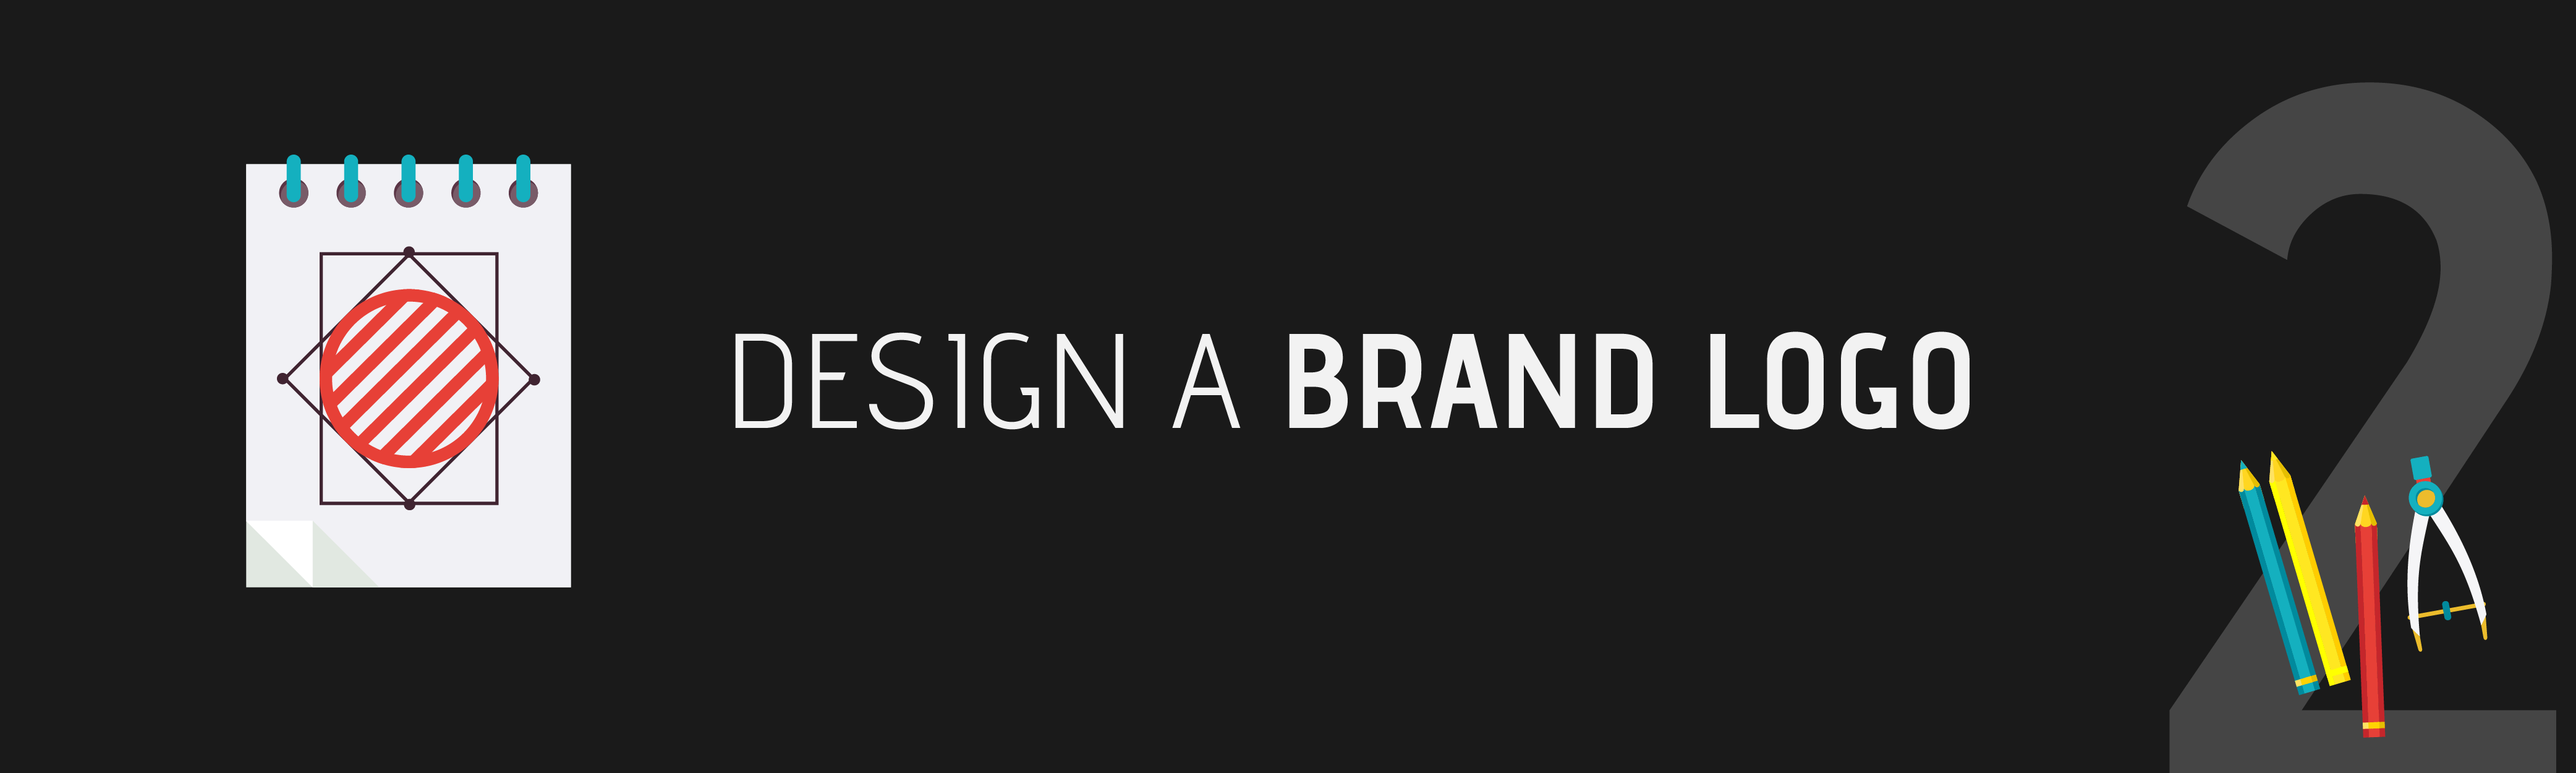 Step 2: Design a Brand Logo